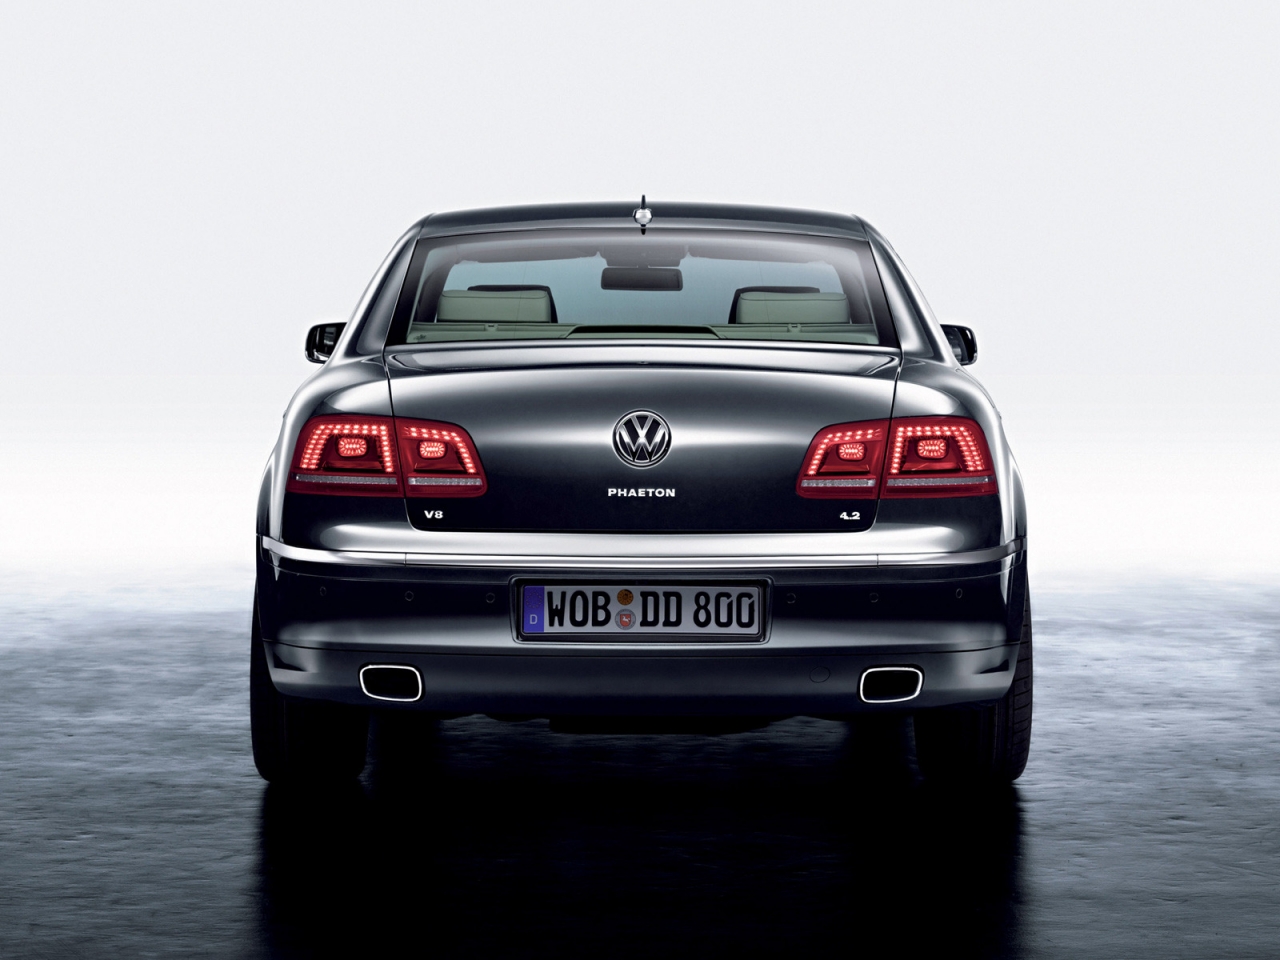 Volkswagen Phaeton Rear for 1280 x 960 resolution